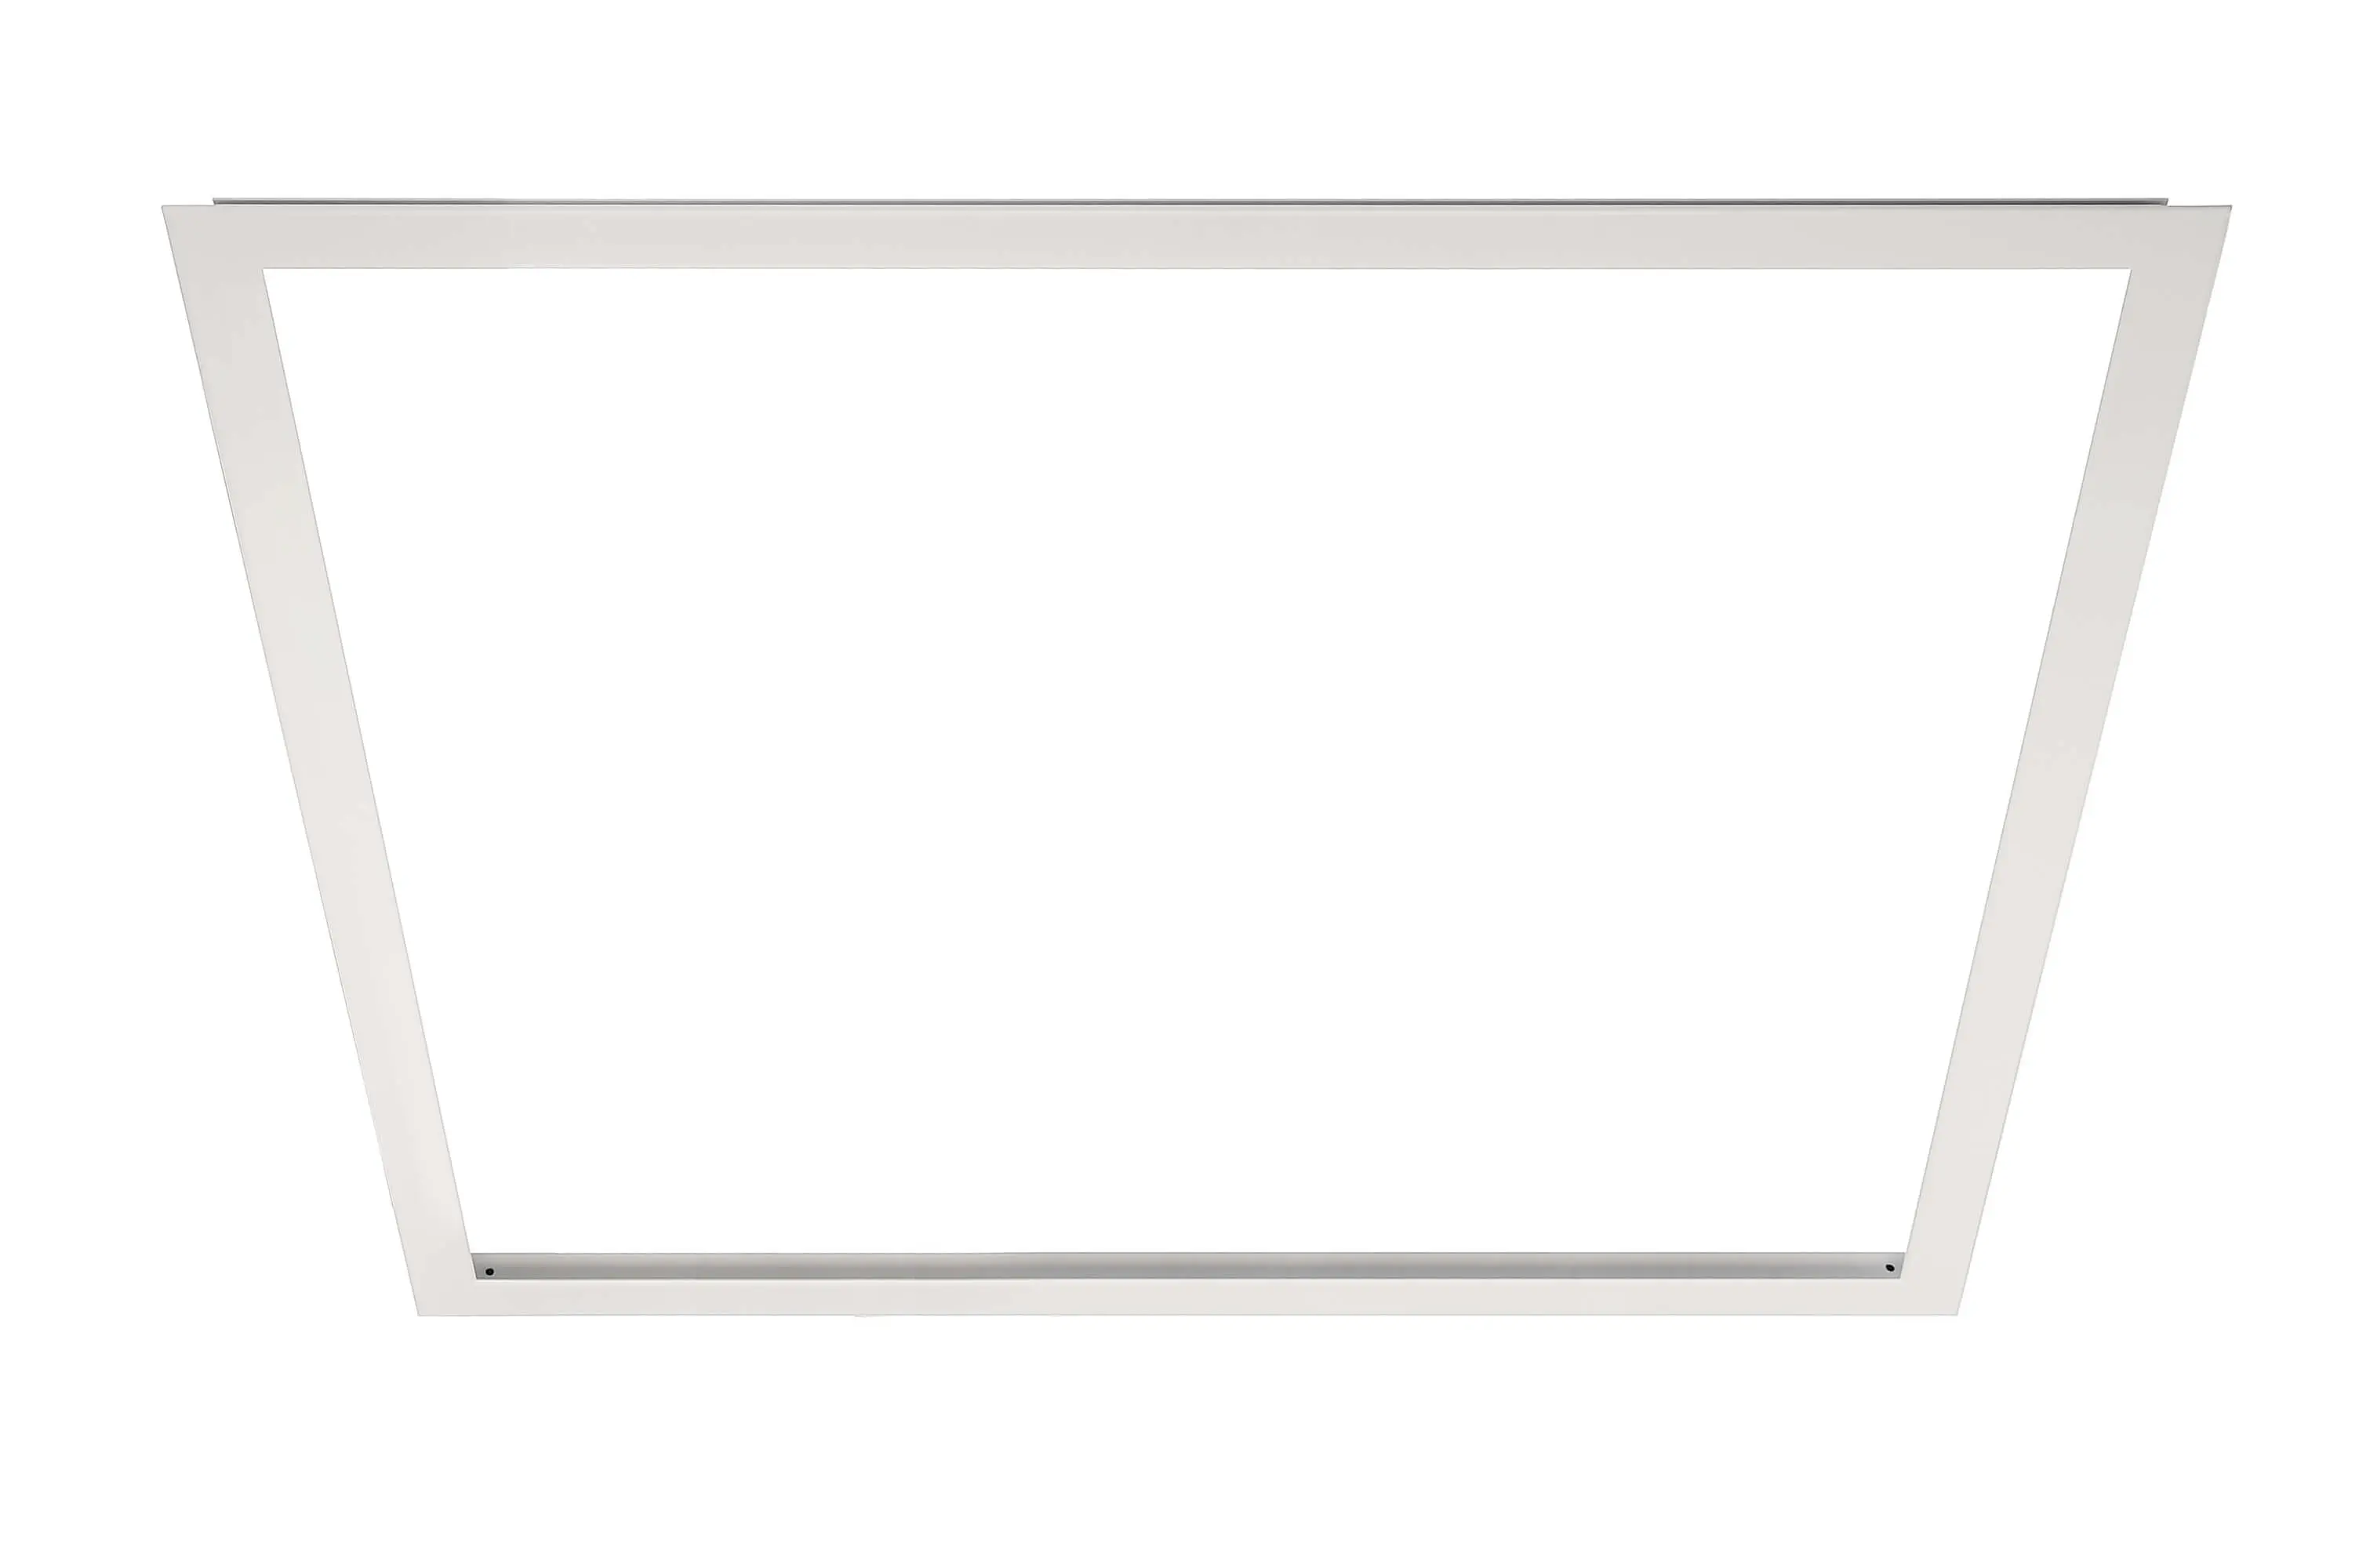 Einbaurahmen weiß für LED-Panels 59.5x59.5cm